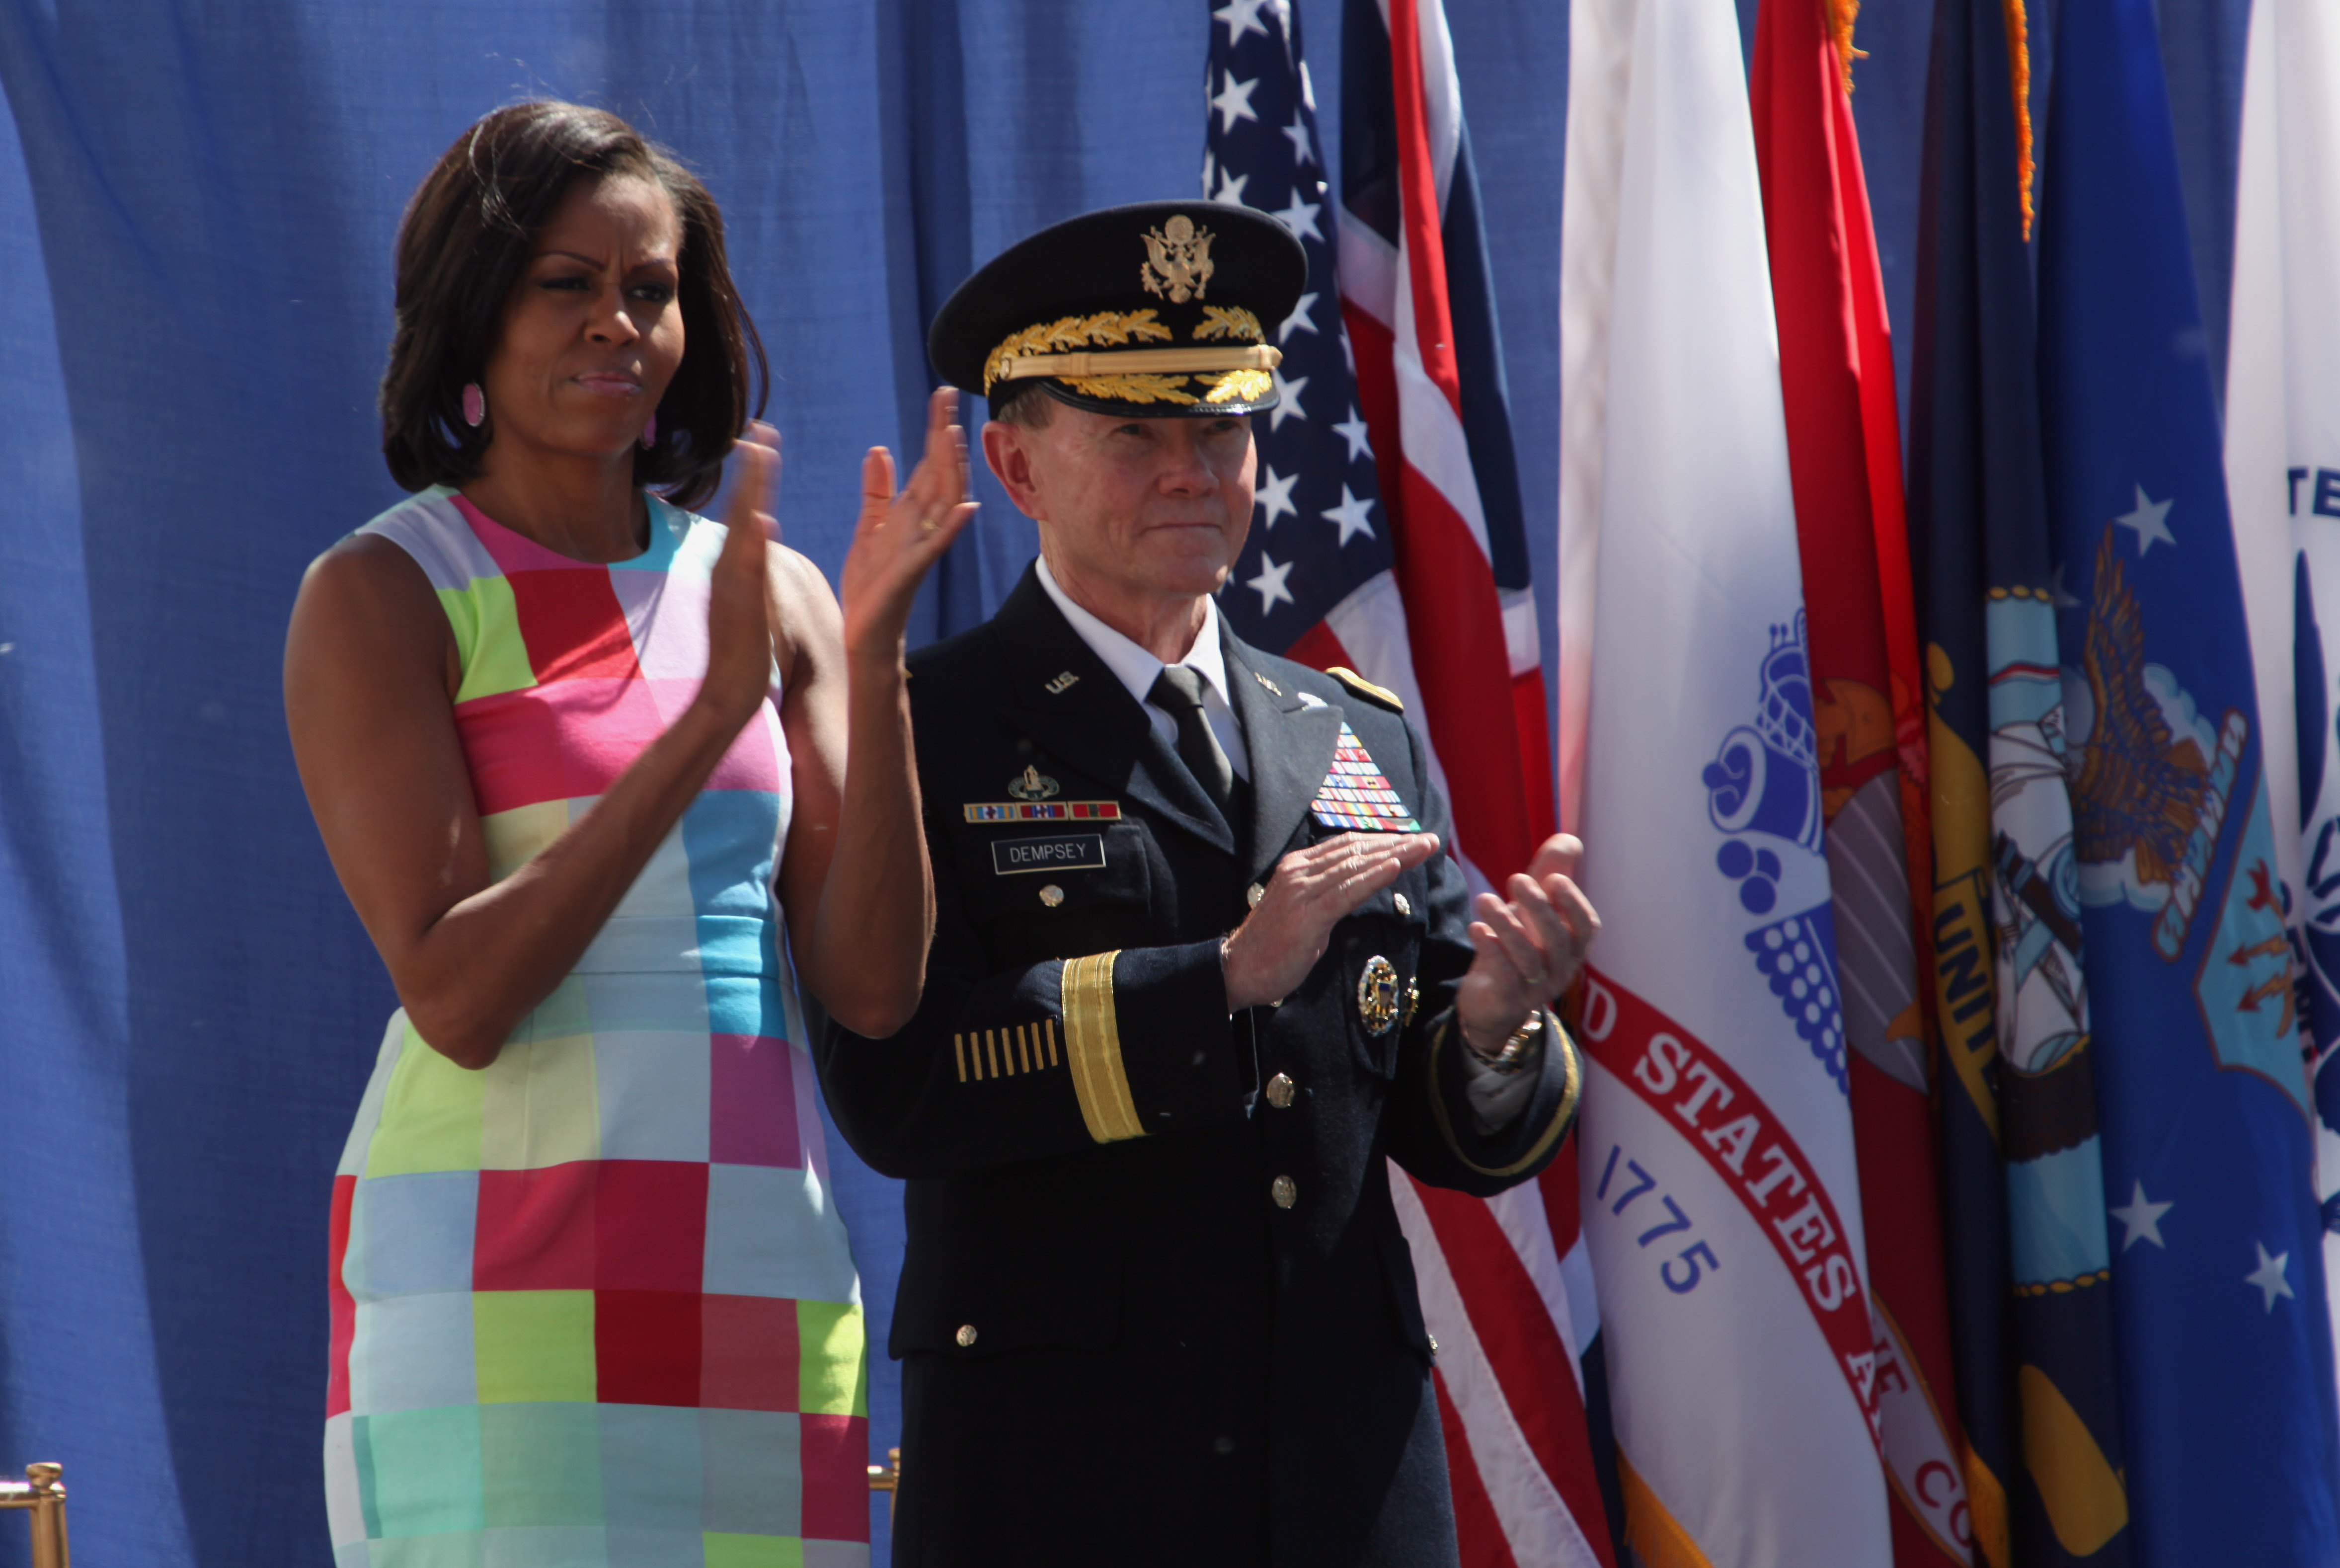 Michelle Obama and Gen. Martin E. Dempsey applaud, April 30, 2012